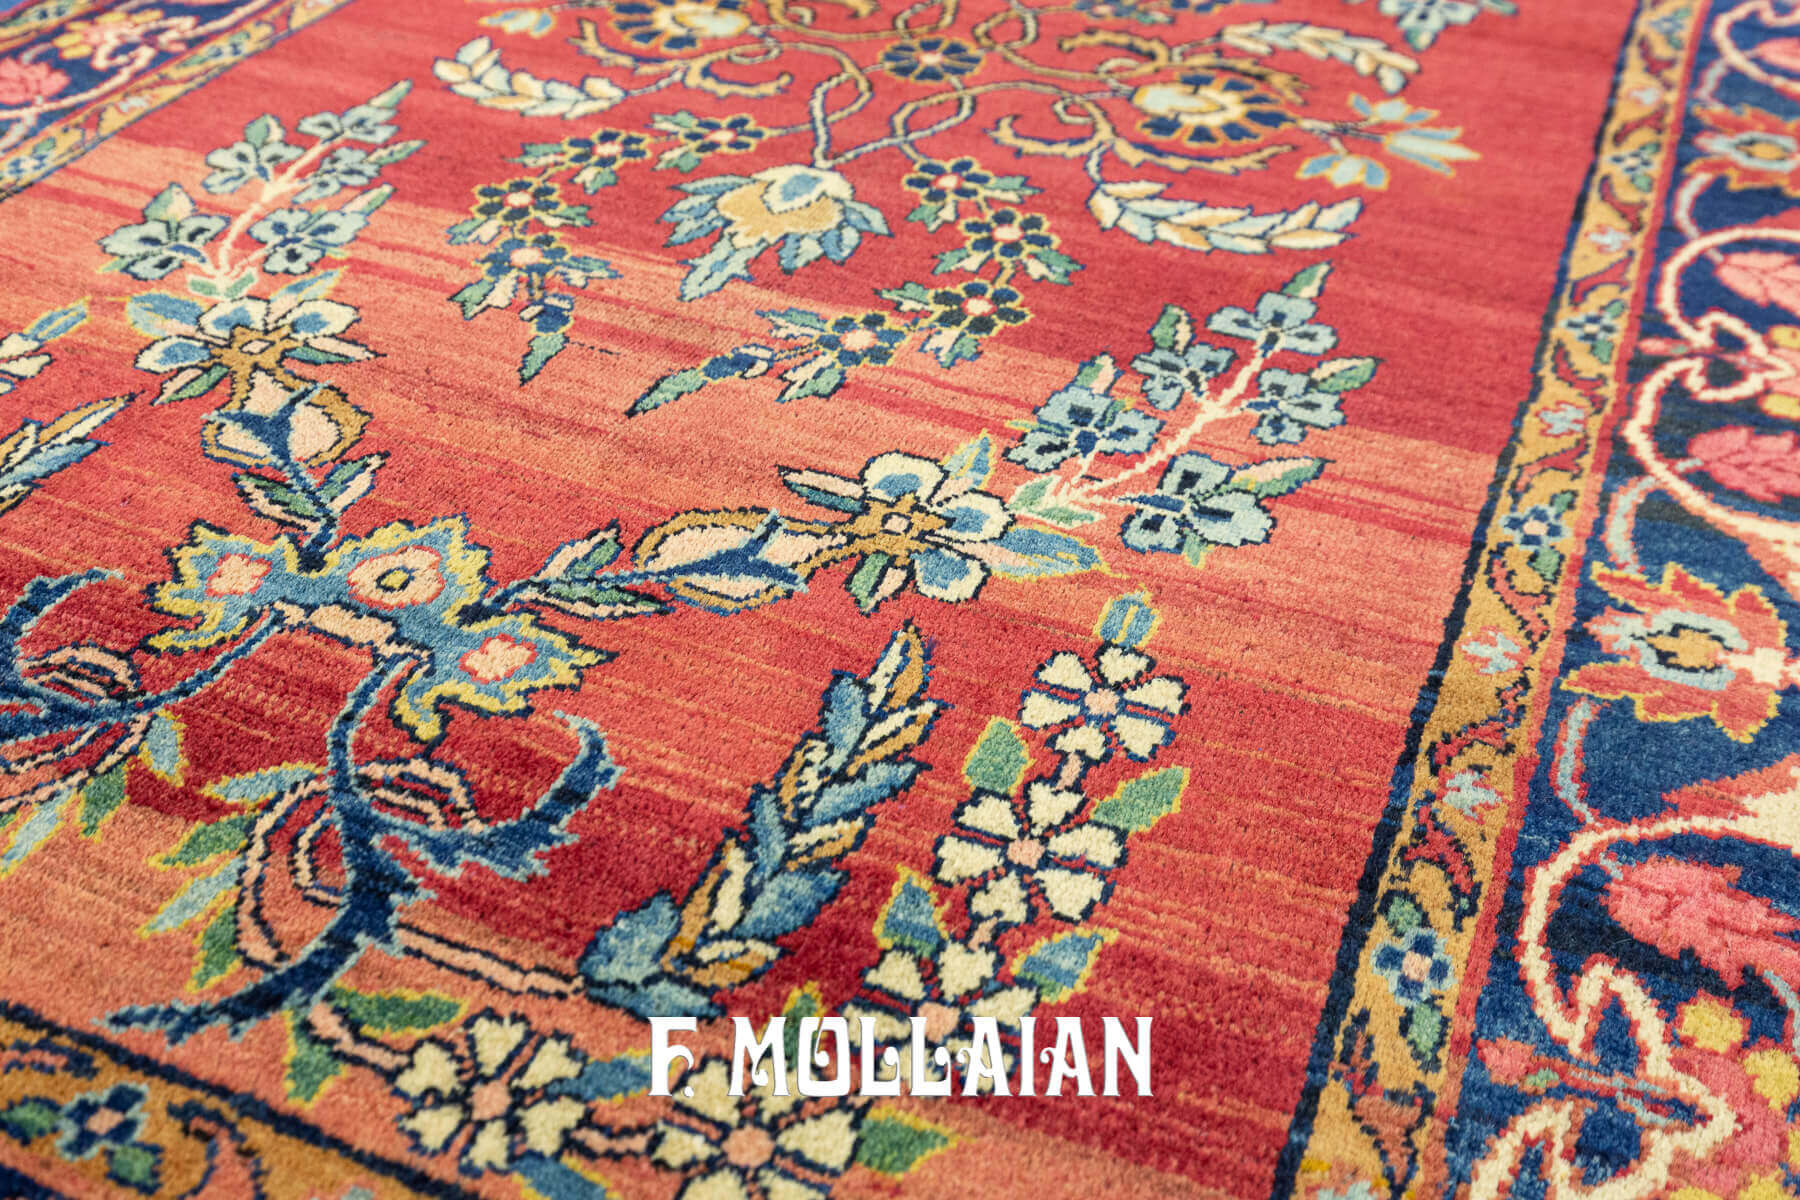 Antique Persian Kerman Floral Red Field Rug n°:38586882